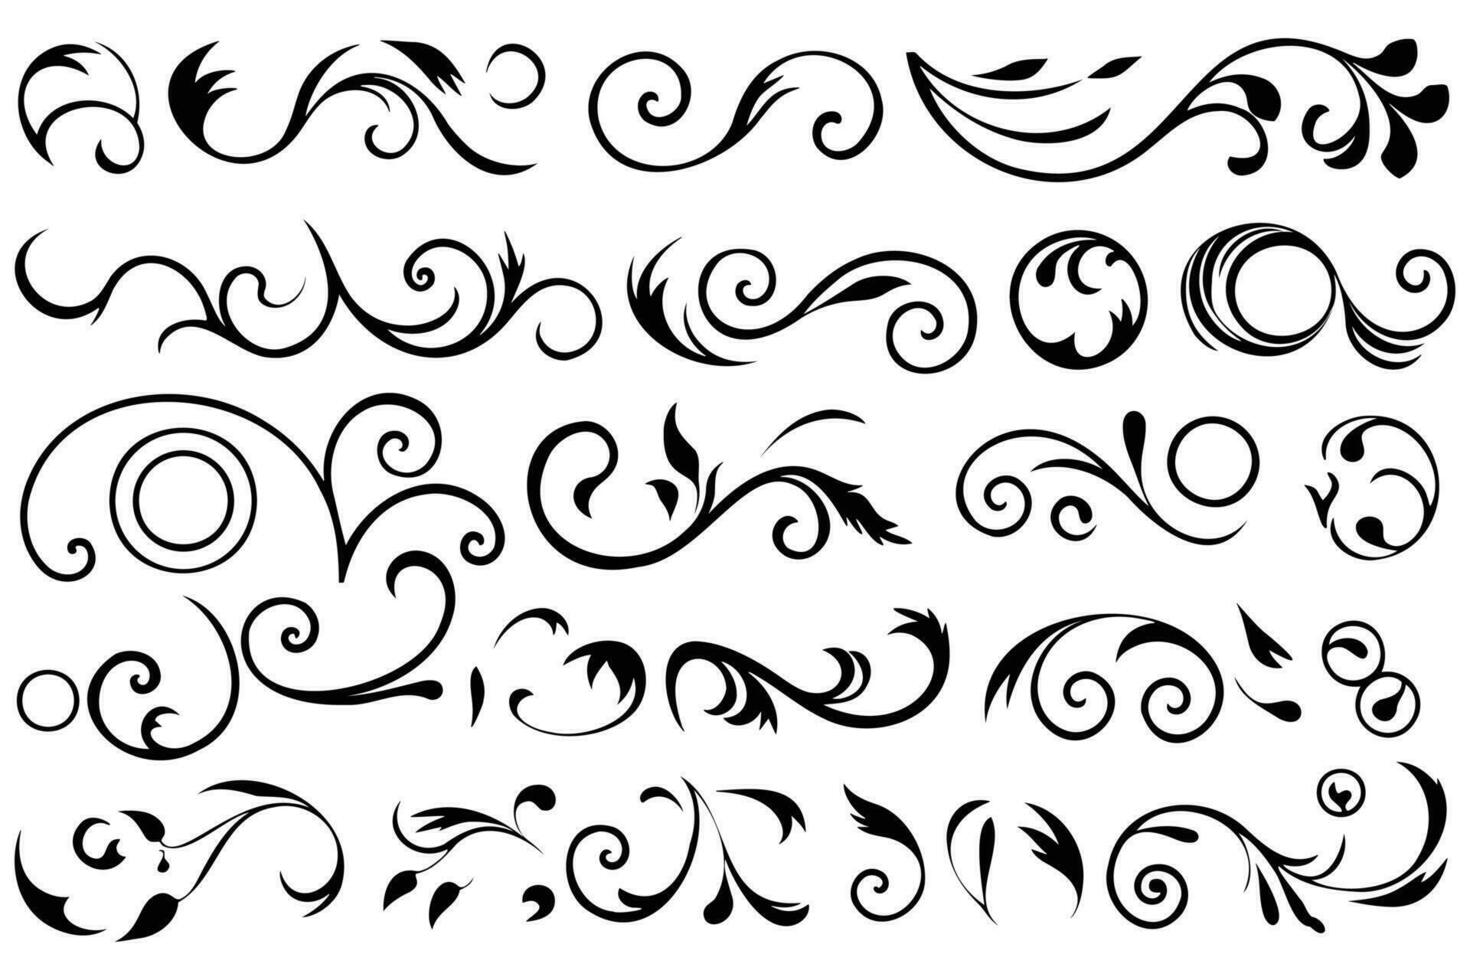 grafisch elegantie sier- schoonschrift reeks met decoratief bloemen elementen vector